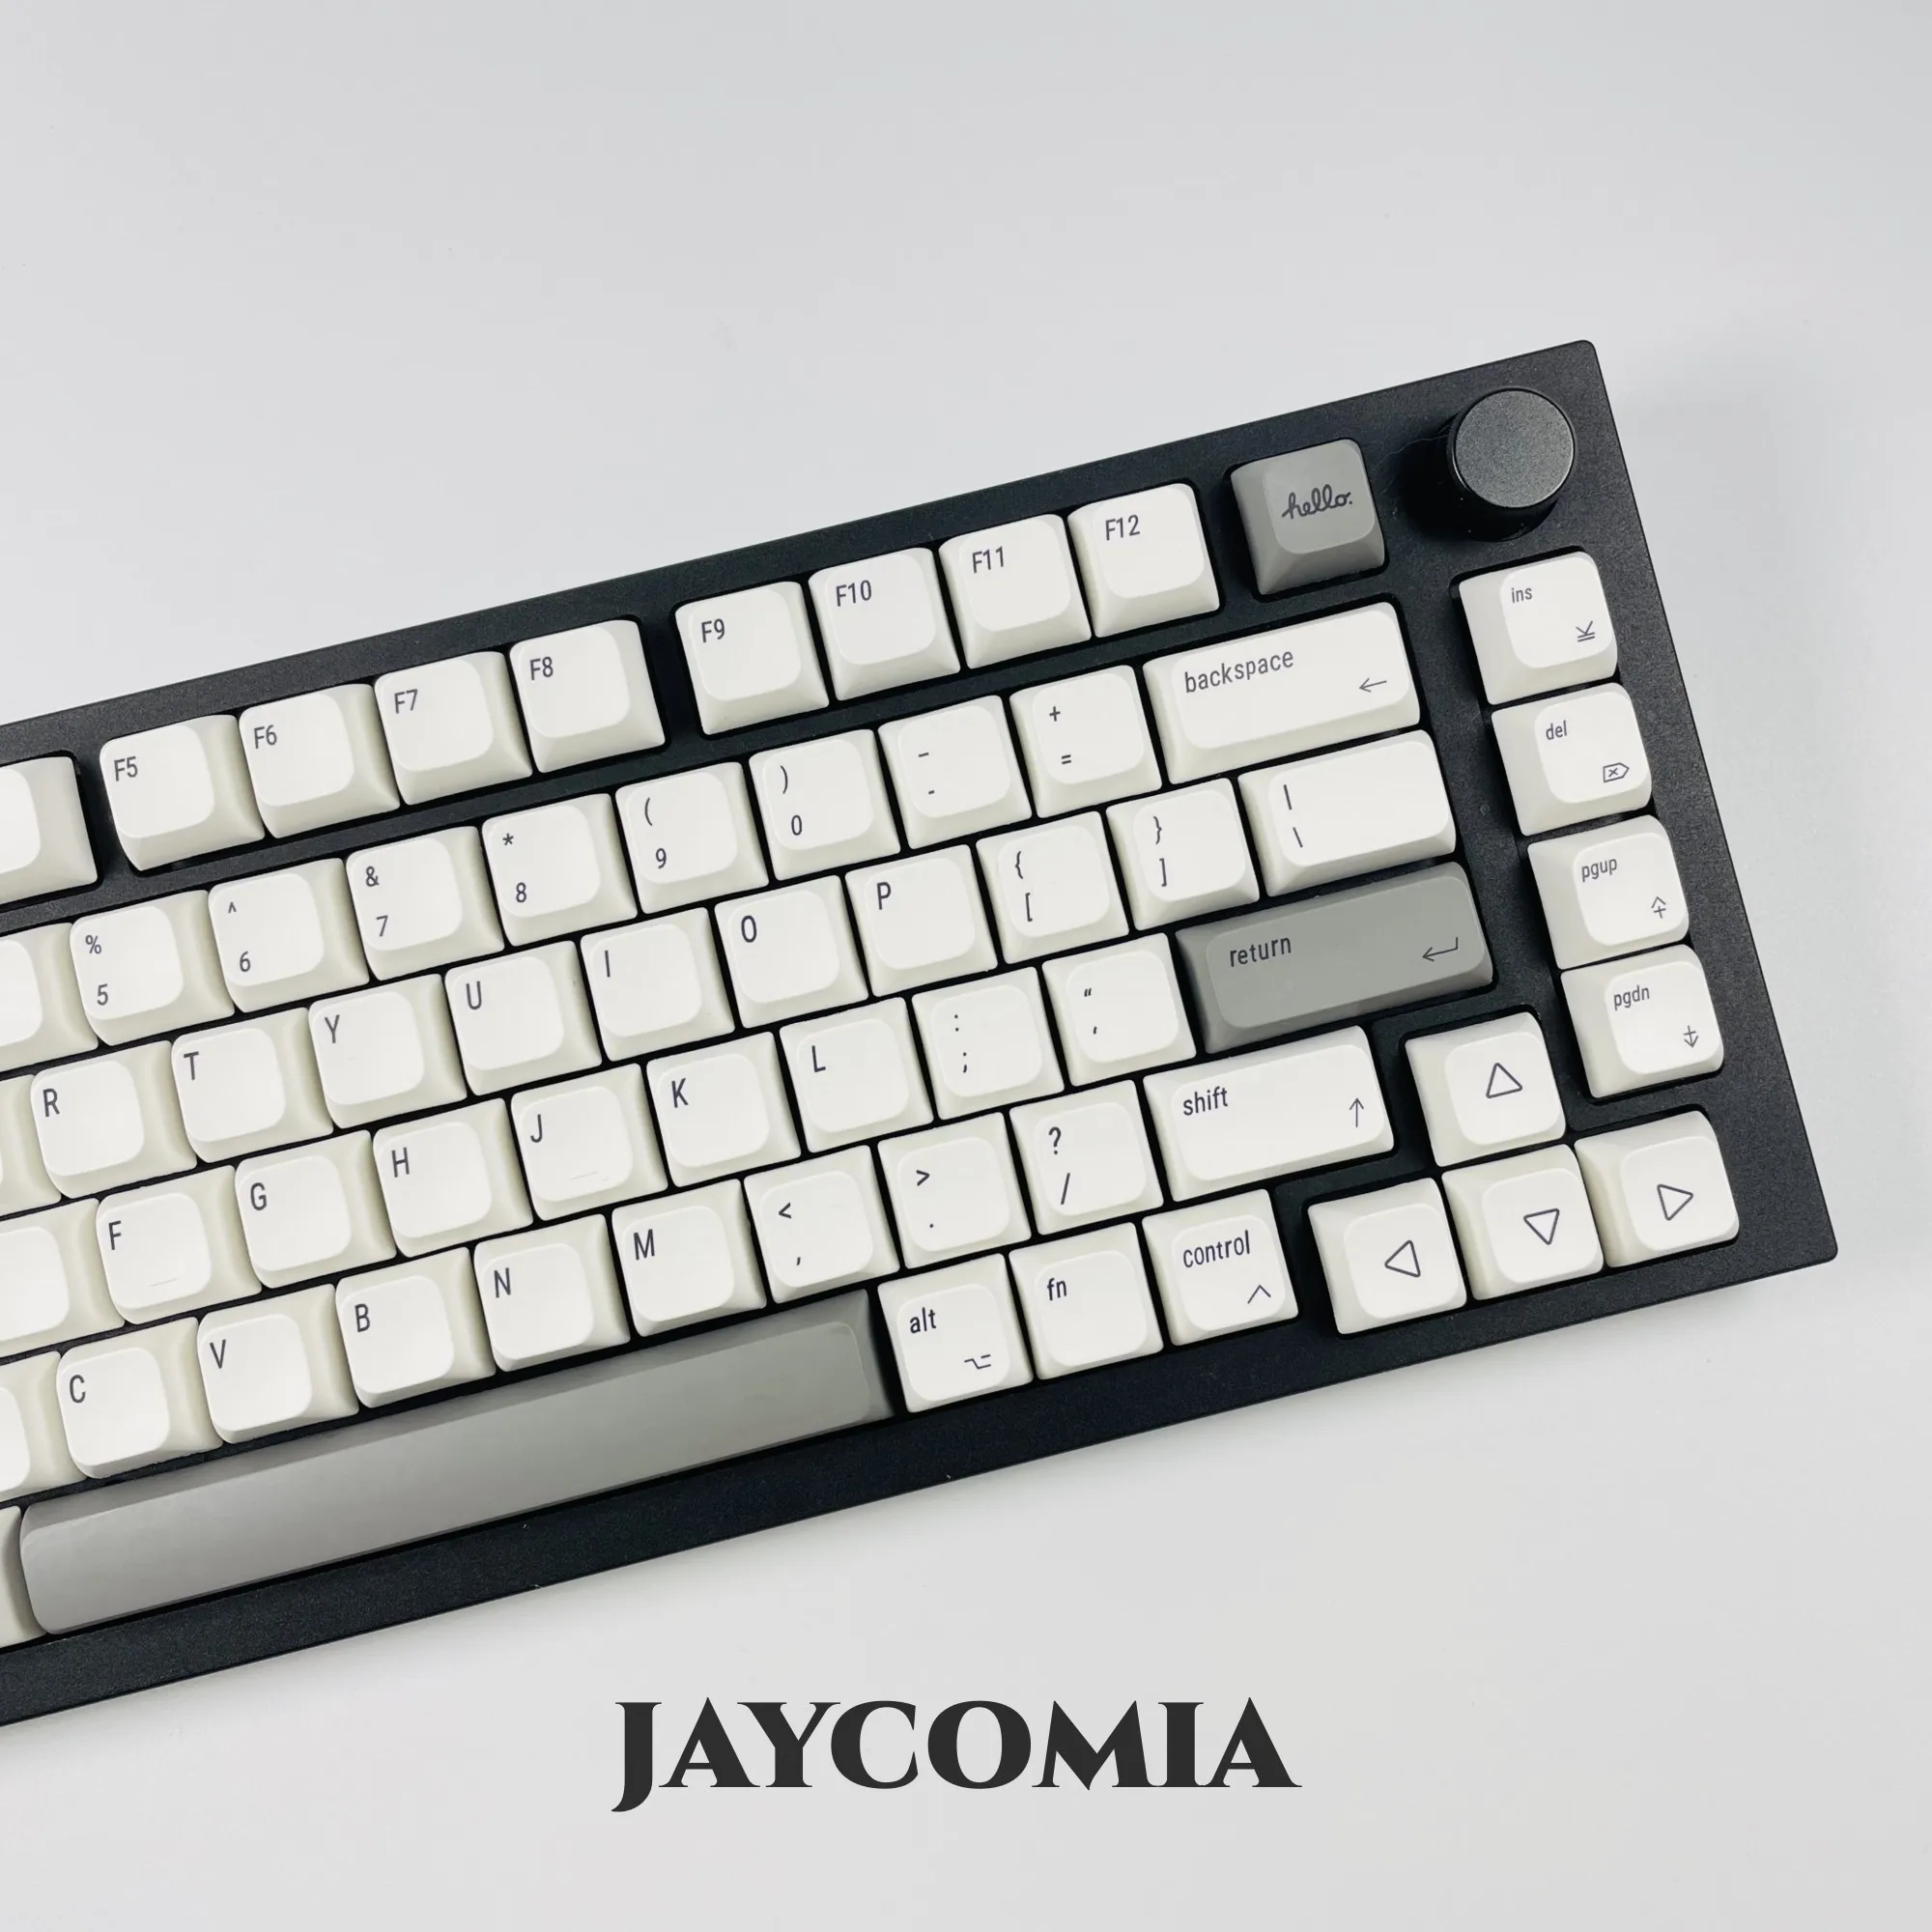 

Клавиатура Apple Keycap, 127 клавиш, XDA, краска по высоте, белые клавиши, английский/Корейский/японский/русский/тайский MAC, ISO для механической клавиатуры